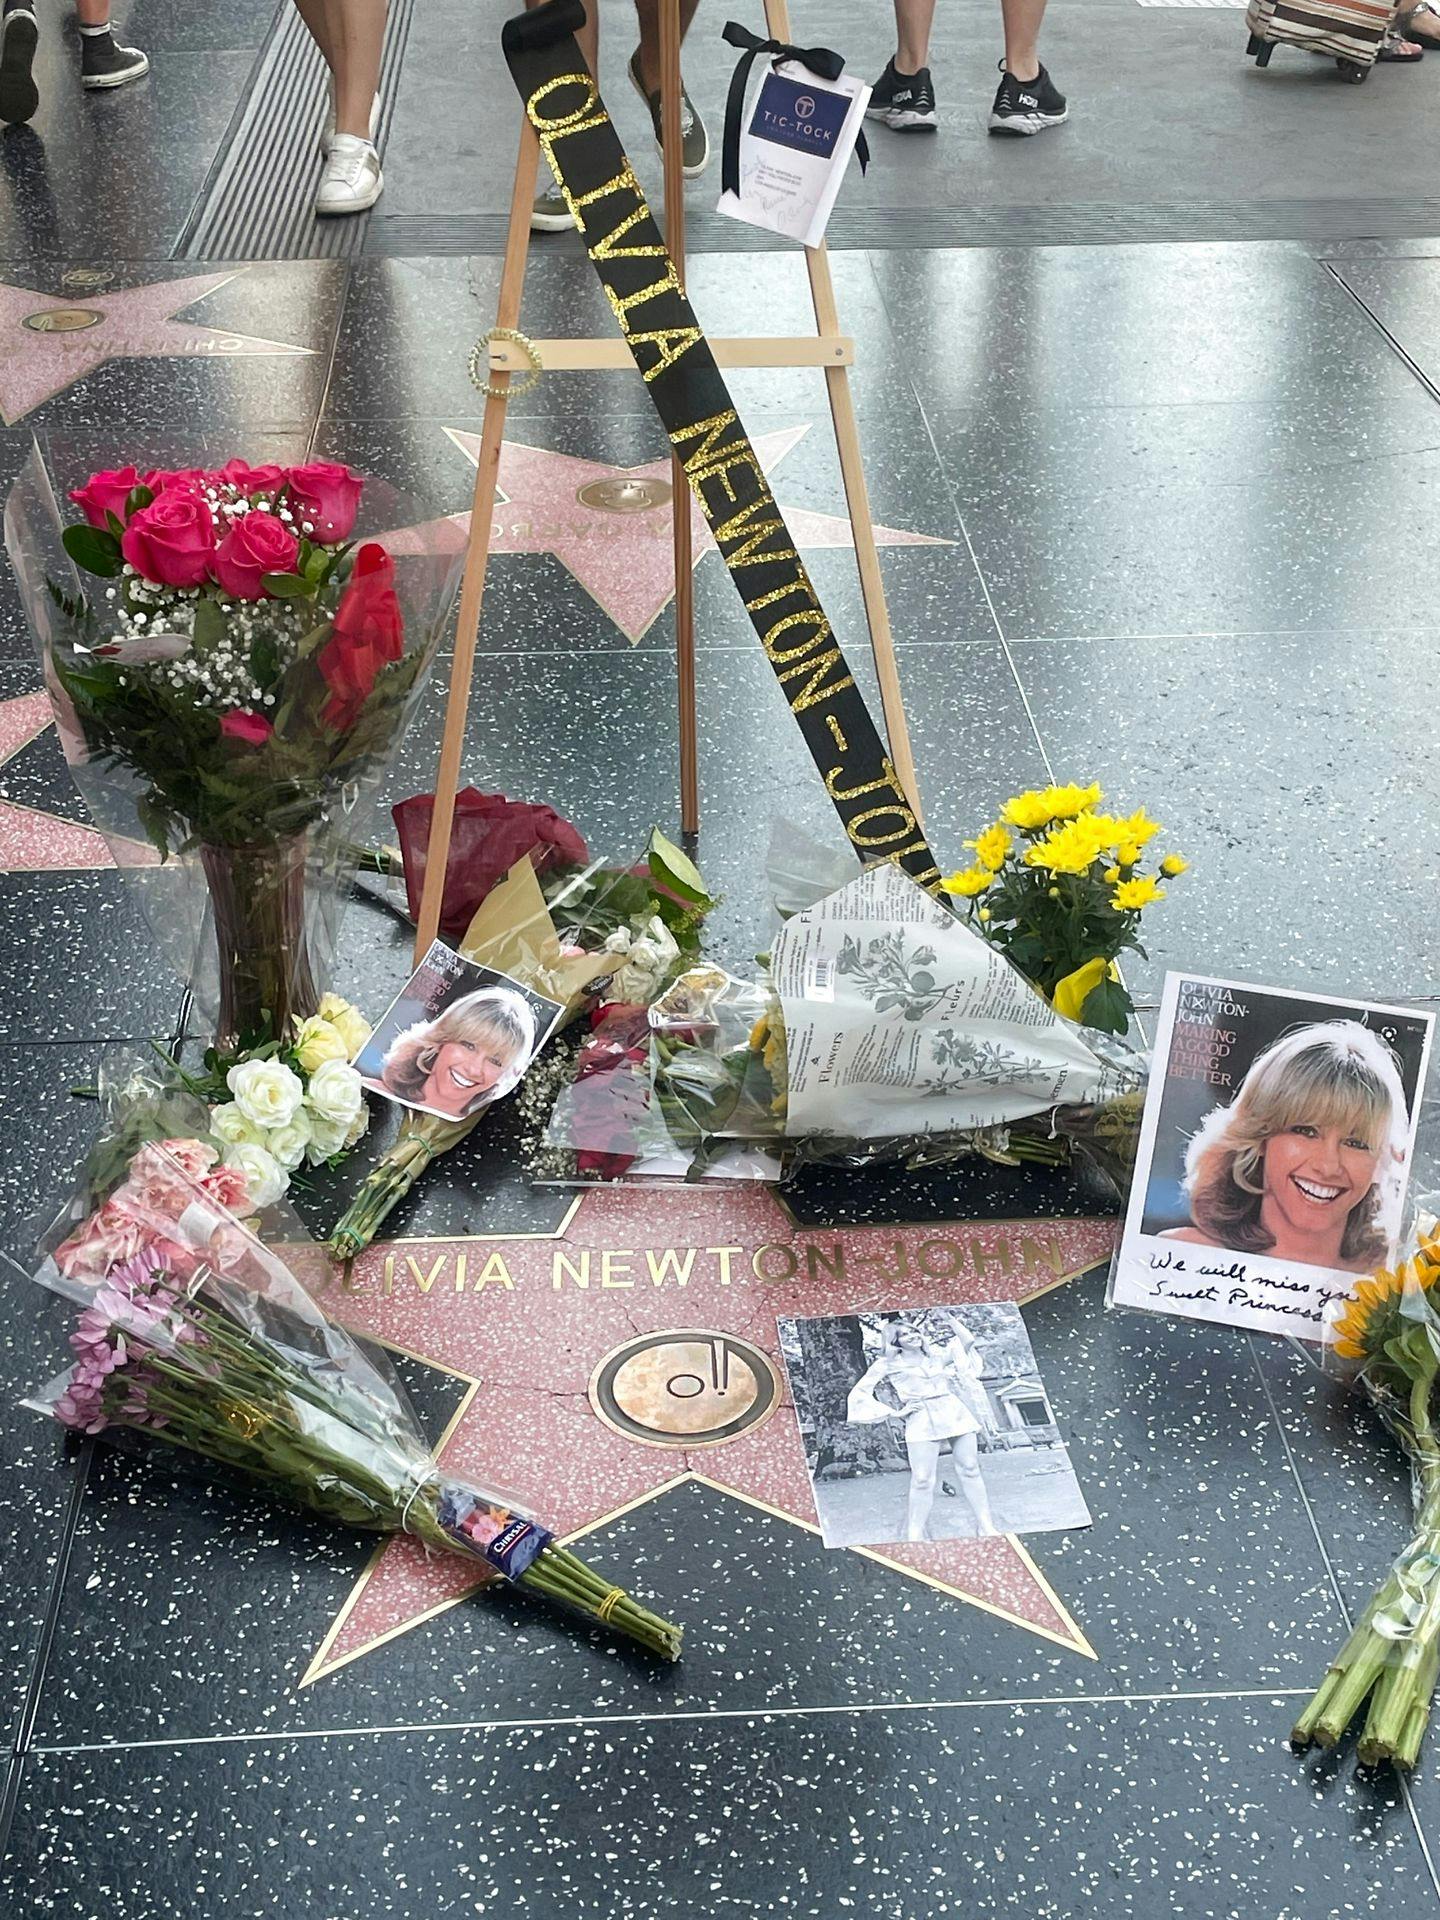 Blomster og billeder pryder Olivia Newton-Johns stjerne på Hollywoods Walk of Fame efter nyheden om hendes død.&nbsp;
